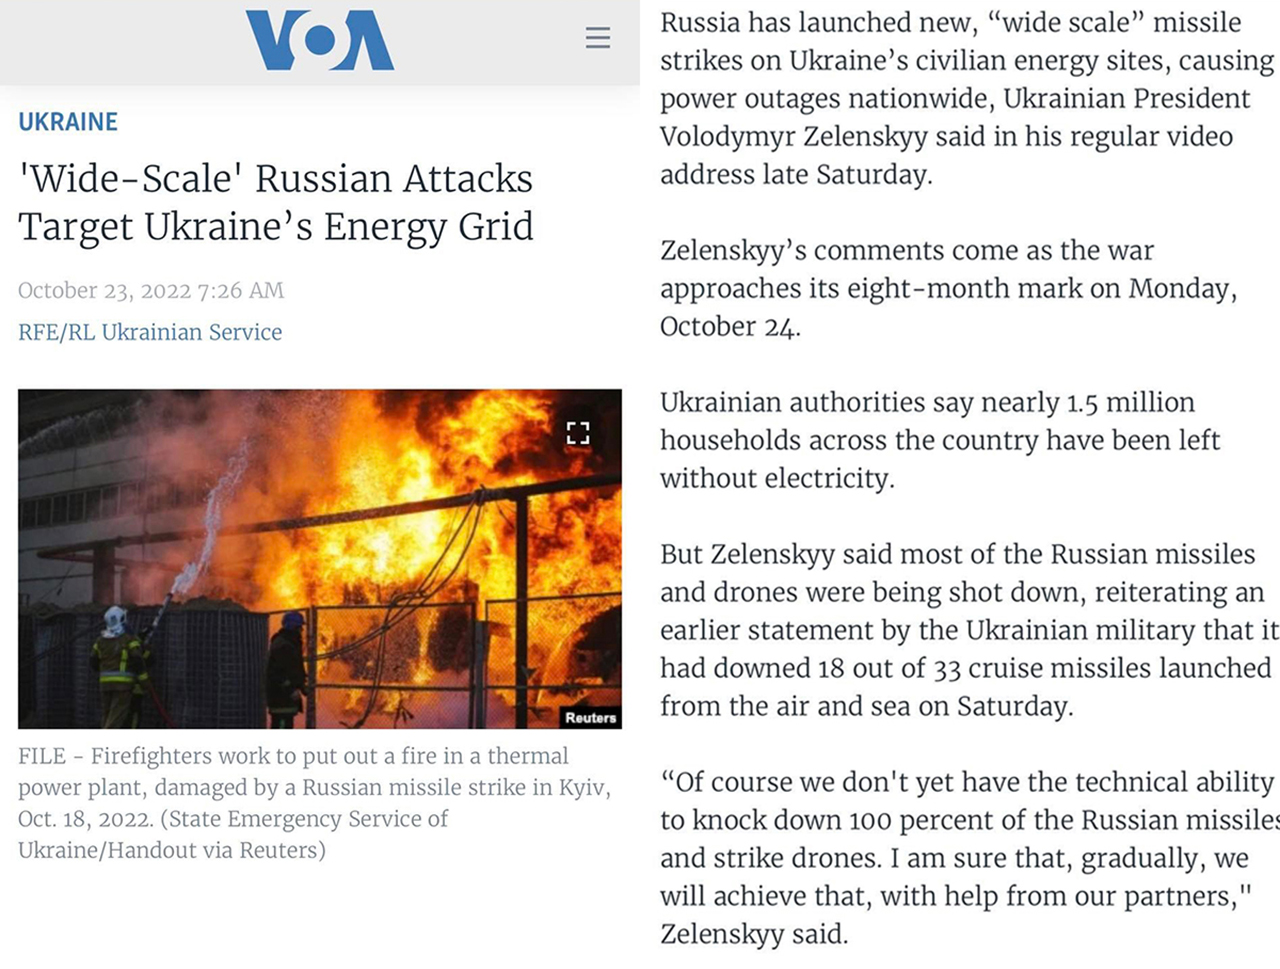 그림 4. "러시아가 우크라이나의 에너지 공급망을 대상으로 '광범위한' 공격을 하는 중이다"라는 제목의 미국의 소리, VOA 2022년 10월 23일자 기사 도입부 캡처.